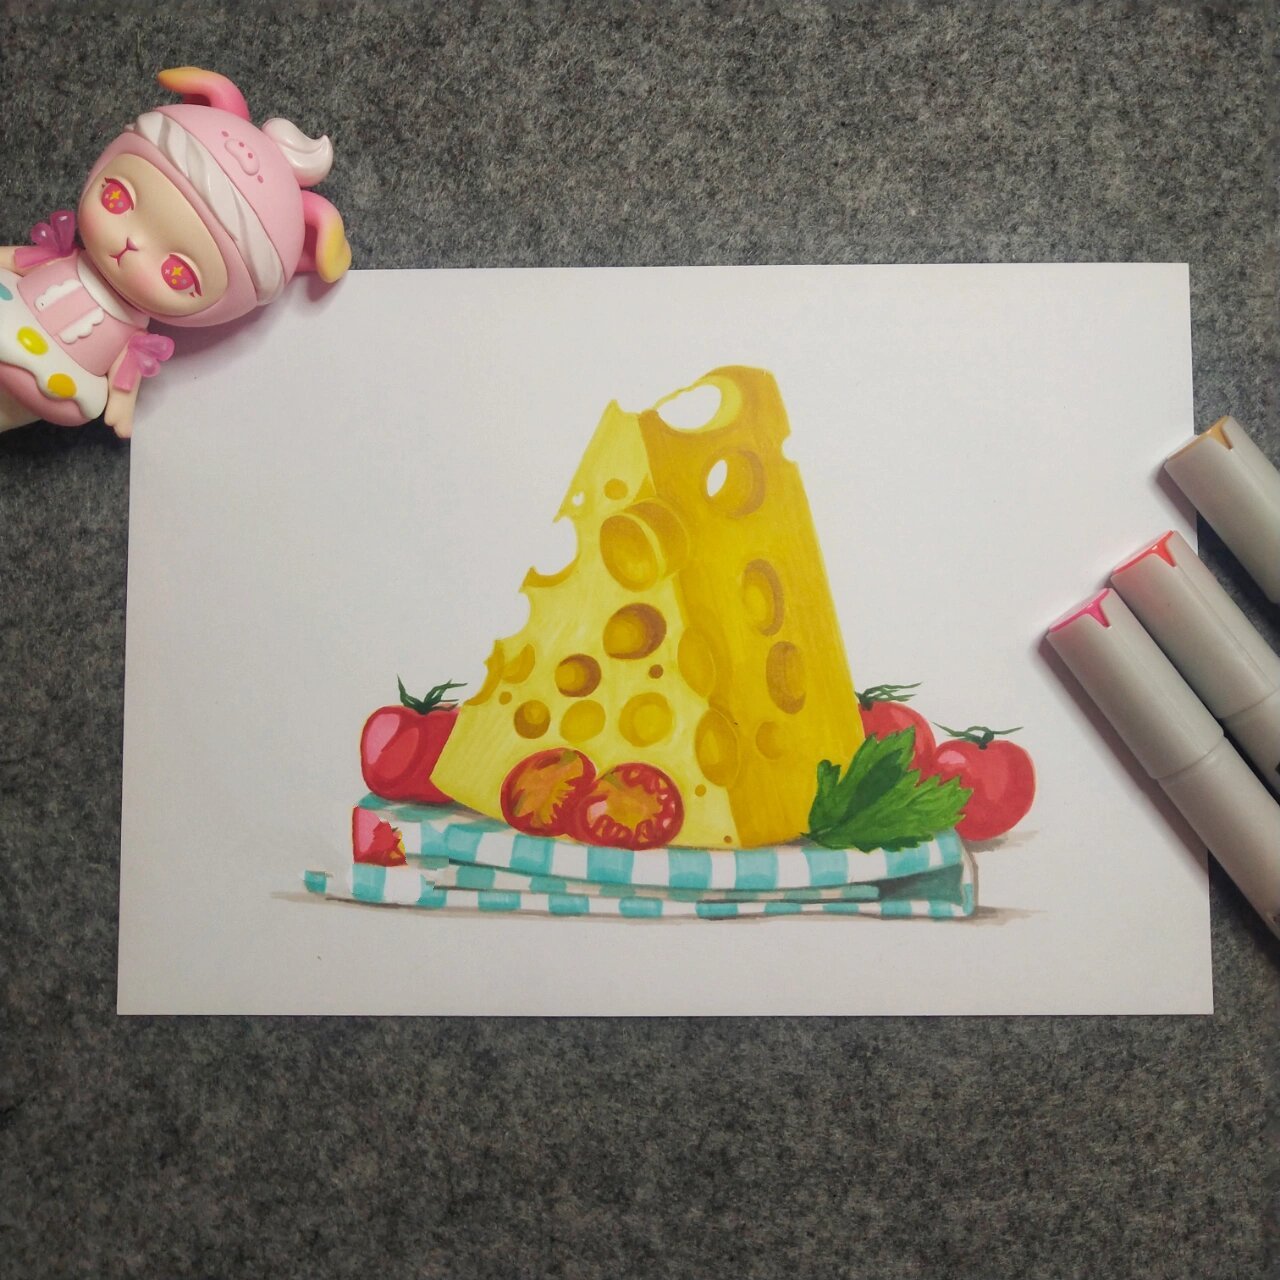 马克笔手绘:零食系列:甜品,附单张图